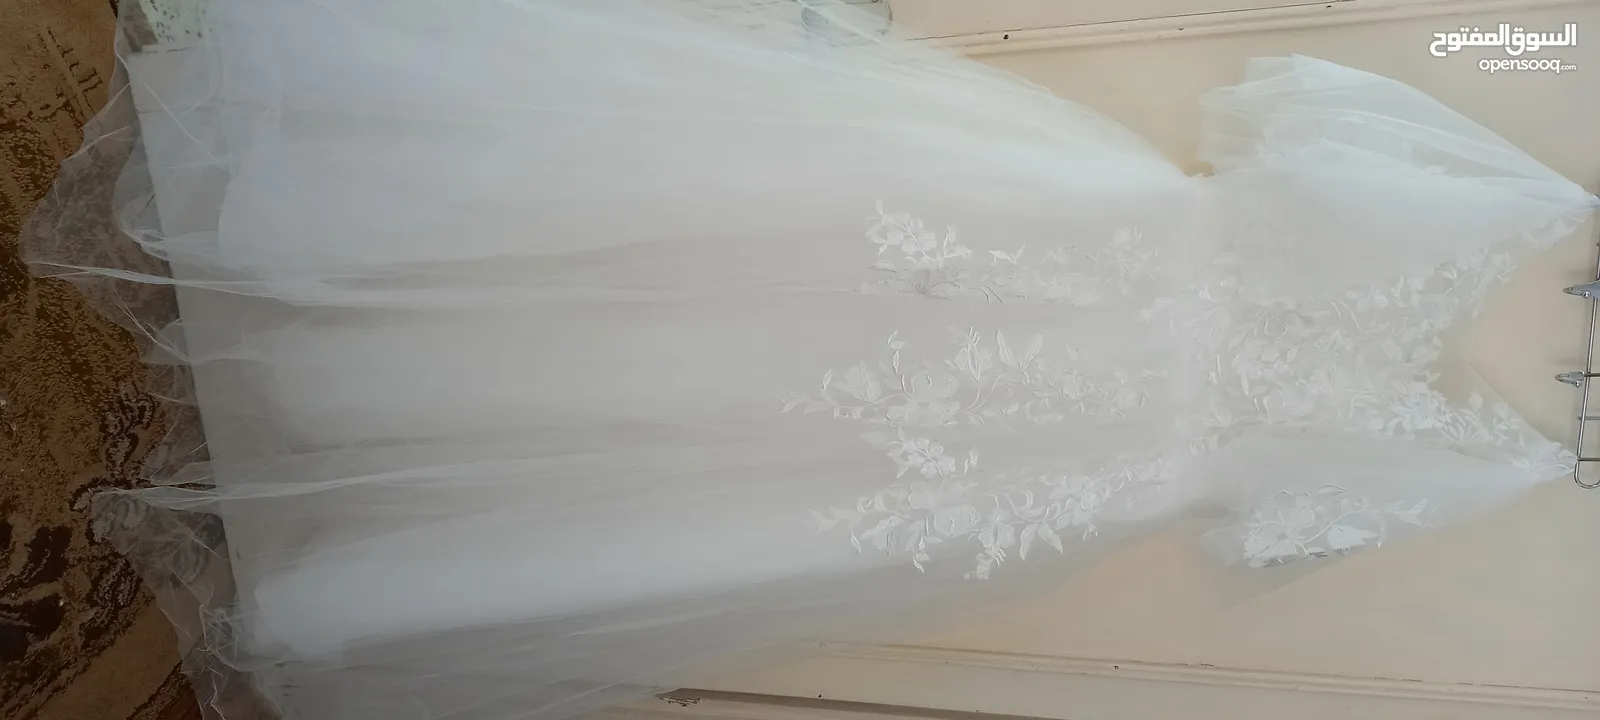 فستان زفاف بدون ستراس للبيع أو للإيجار